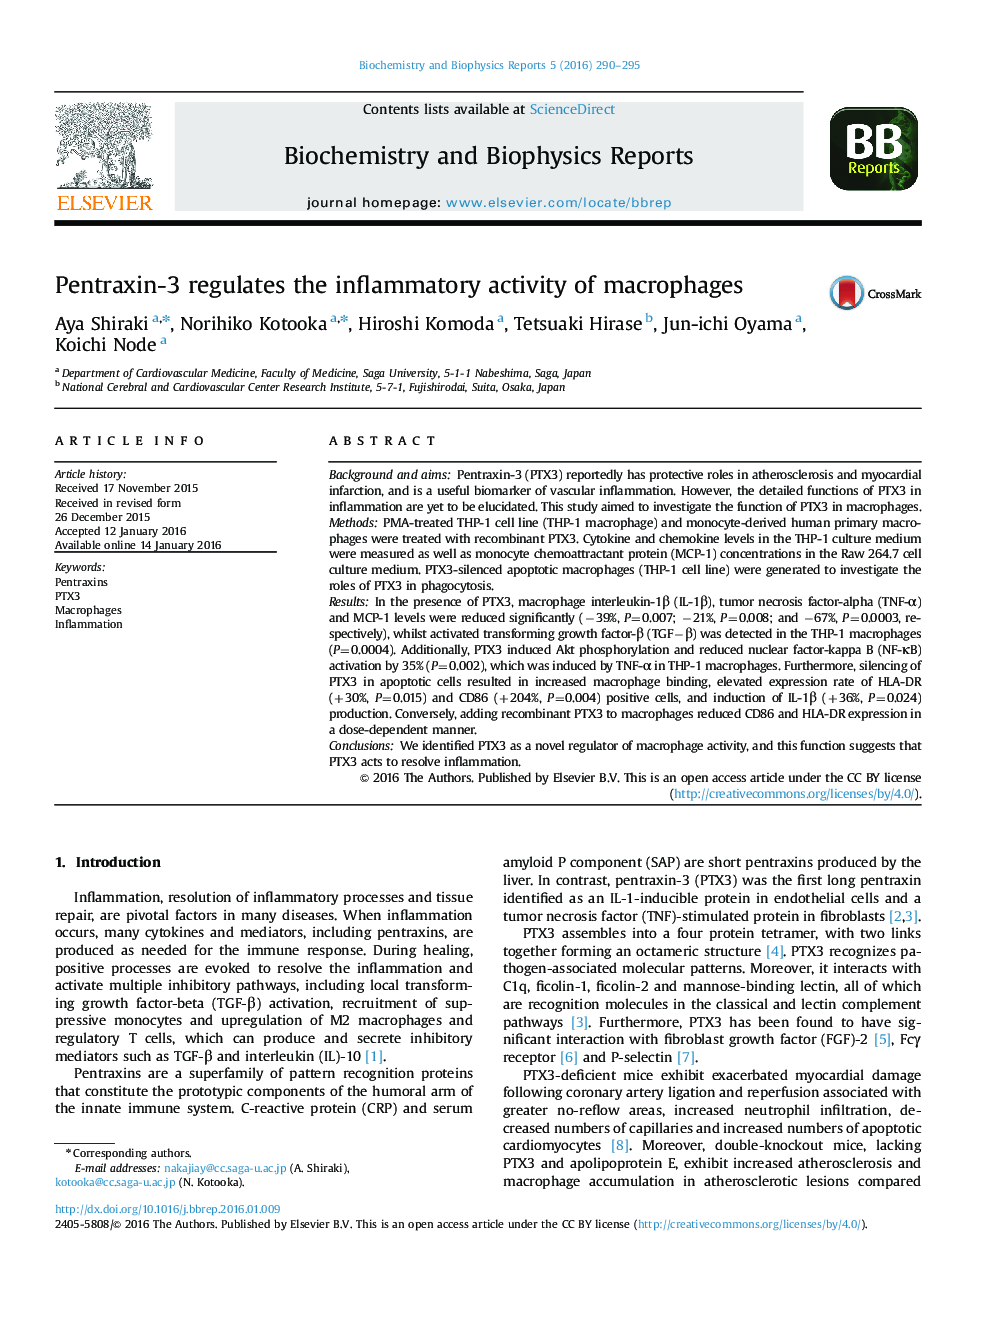 پنتاکسین-3 فعالیت التهابی ماکروفاژها را تنظیم می کند